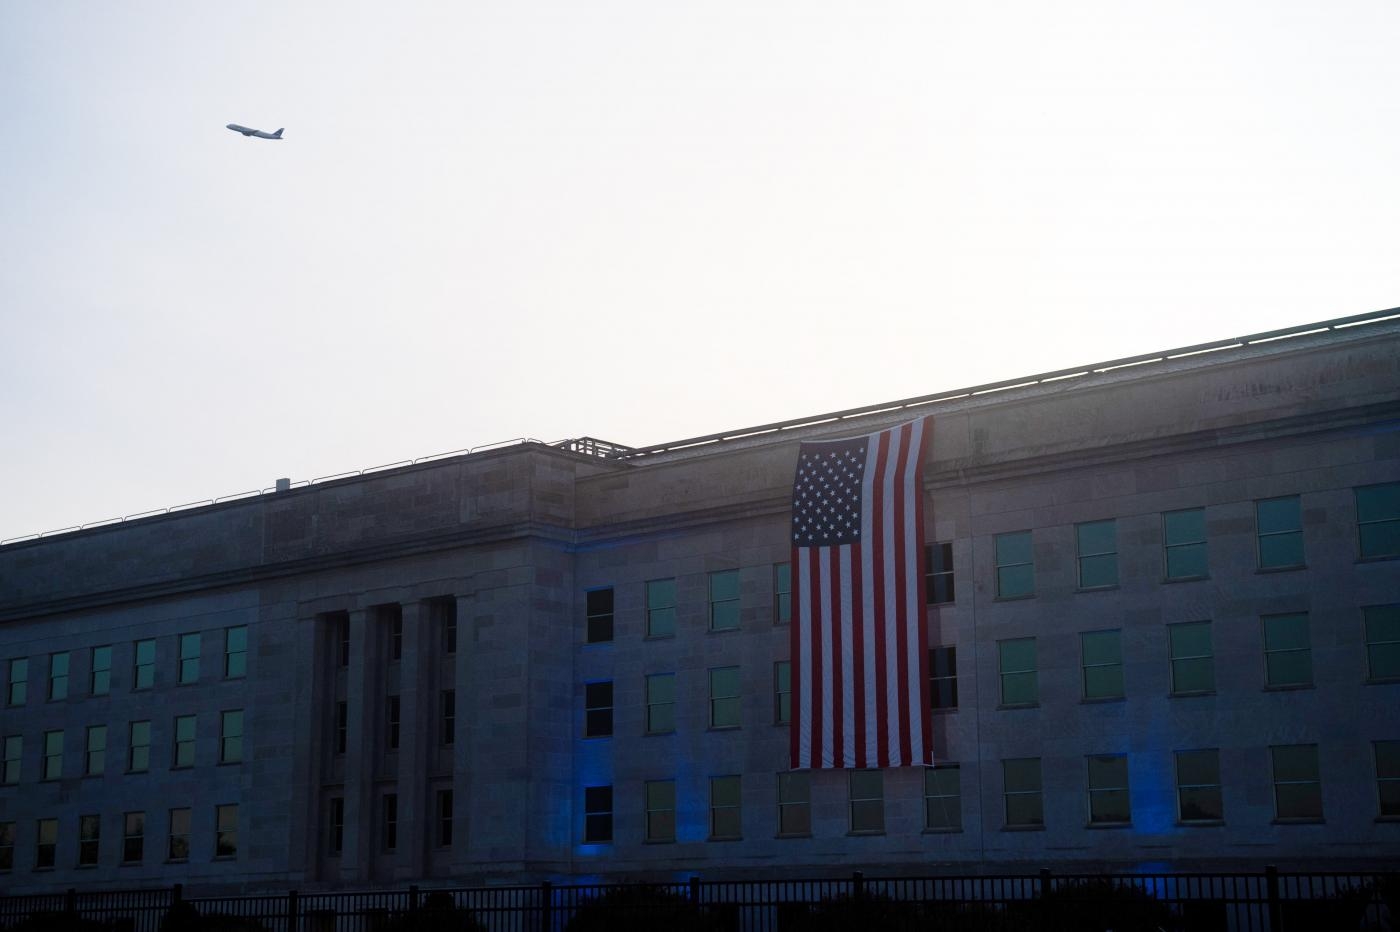 Un drapeau américain recouvre la façade du Pentagone, à Washington D.C., pour commémorer le 20e anniversaire des attentats du 11-Septembre, tandis qu’un avion passe dans le ciel, le 11 septembre 2021 (AFP)